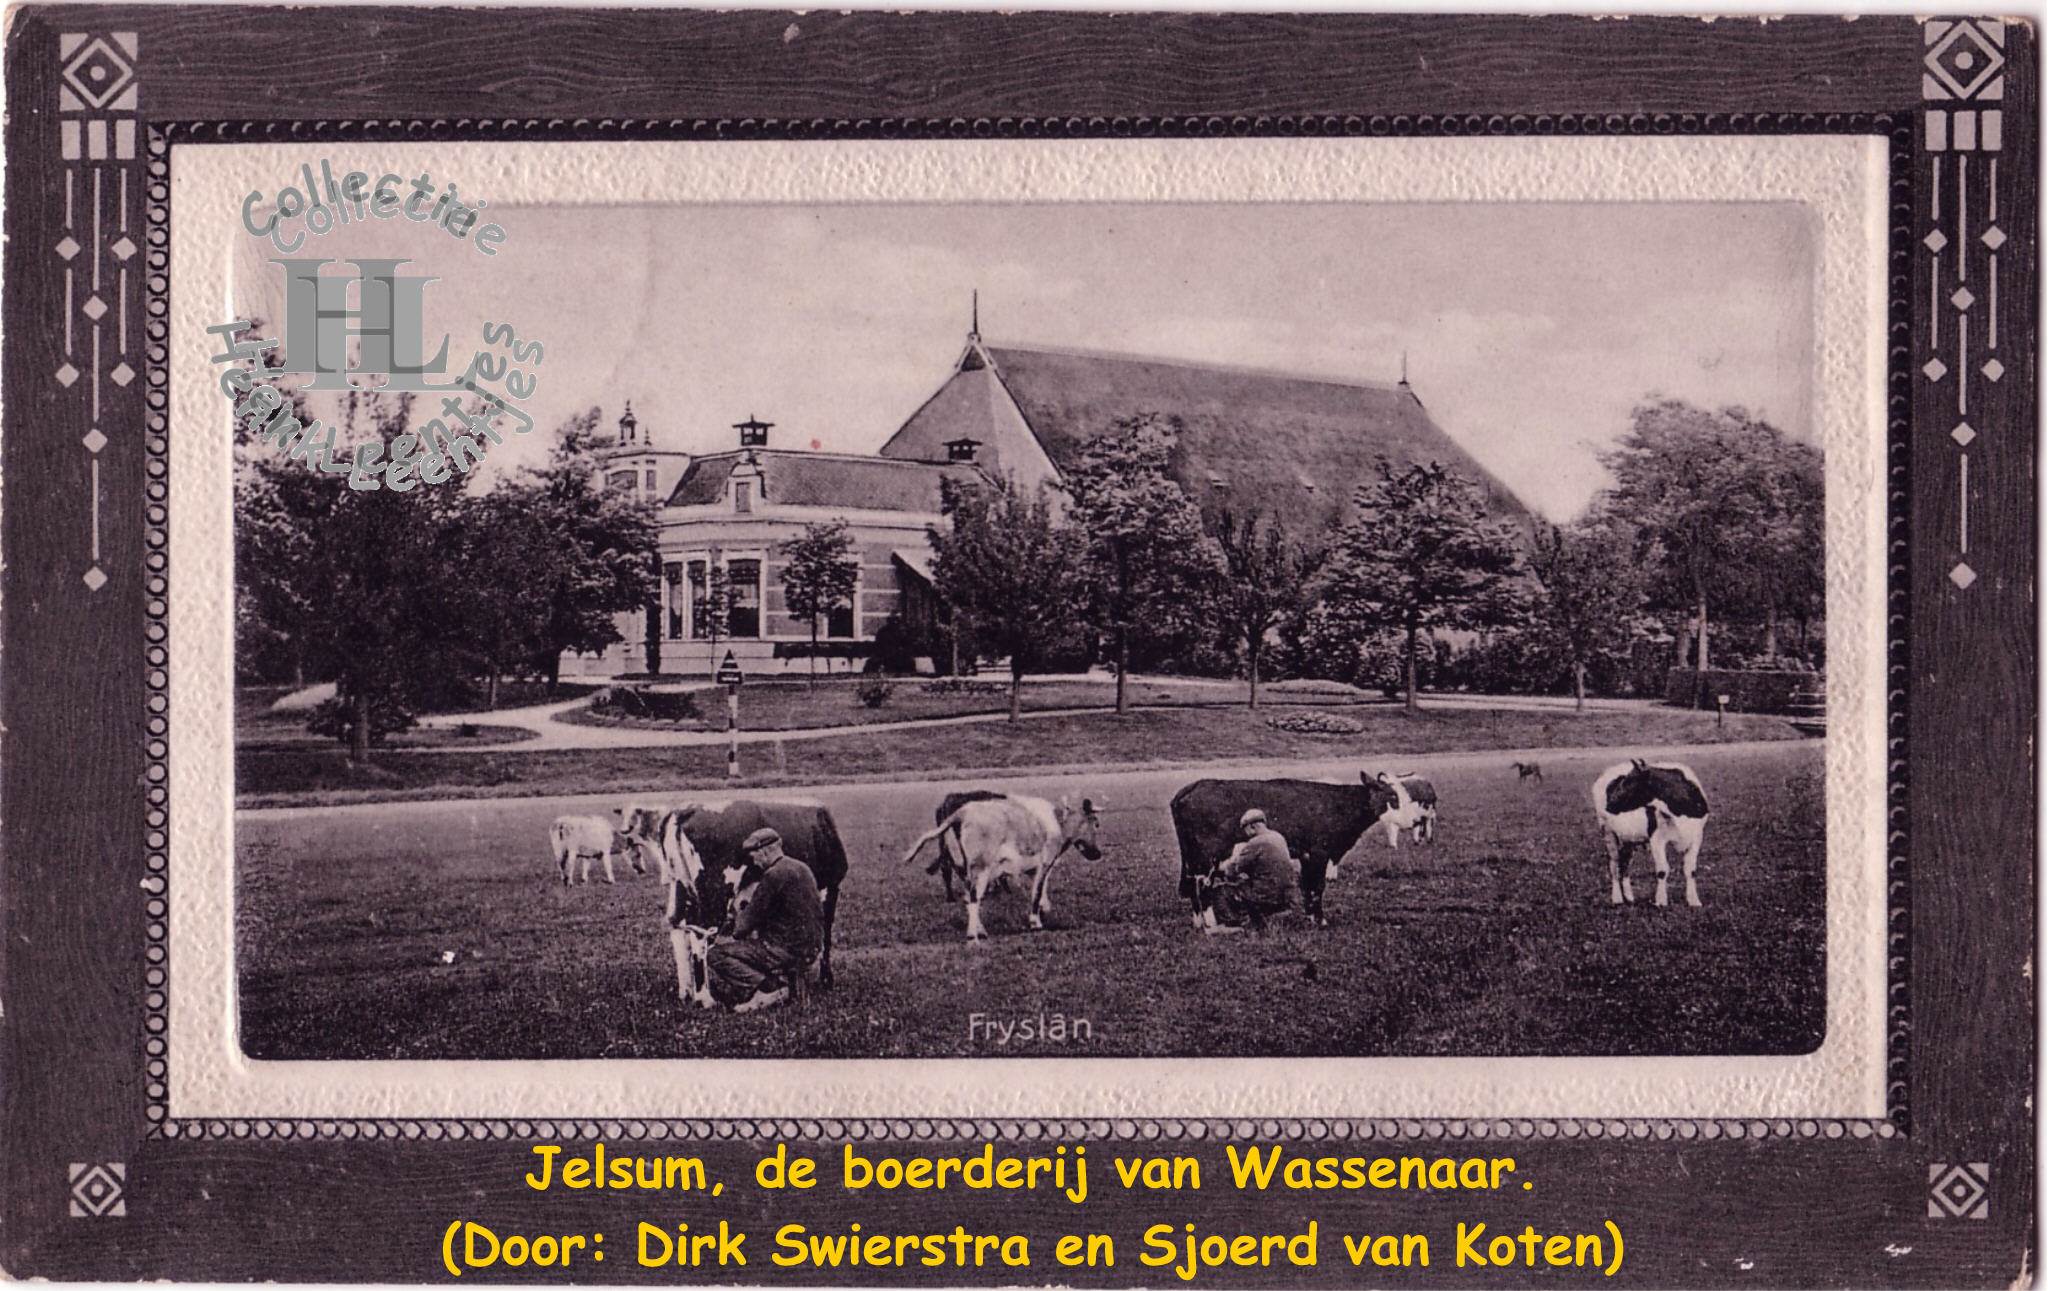 Boerderij J. Wasenaar Jelsum (Door: Dirk Swierstra en Sjoerd van Koten)